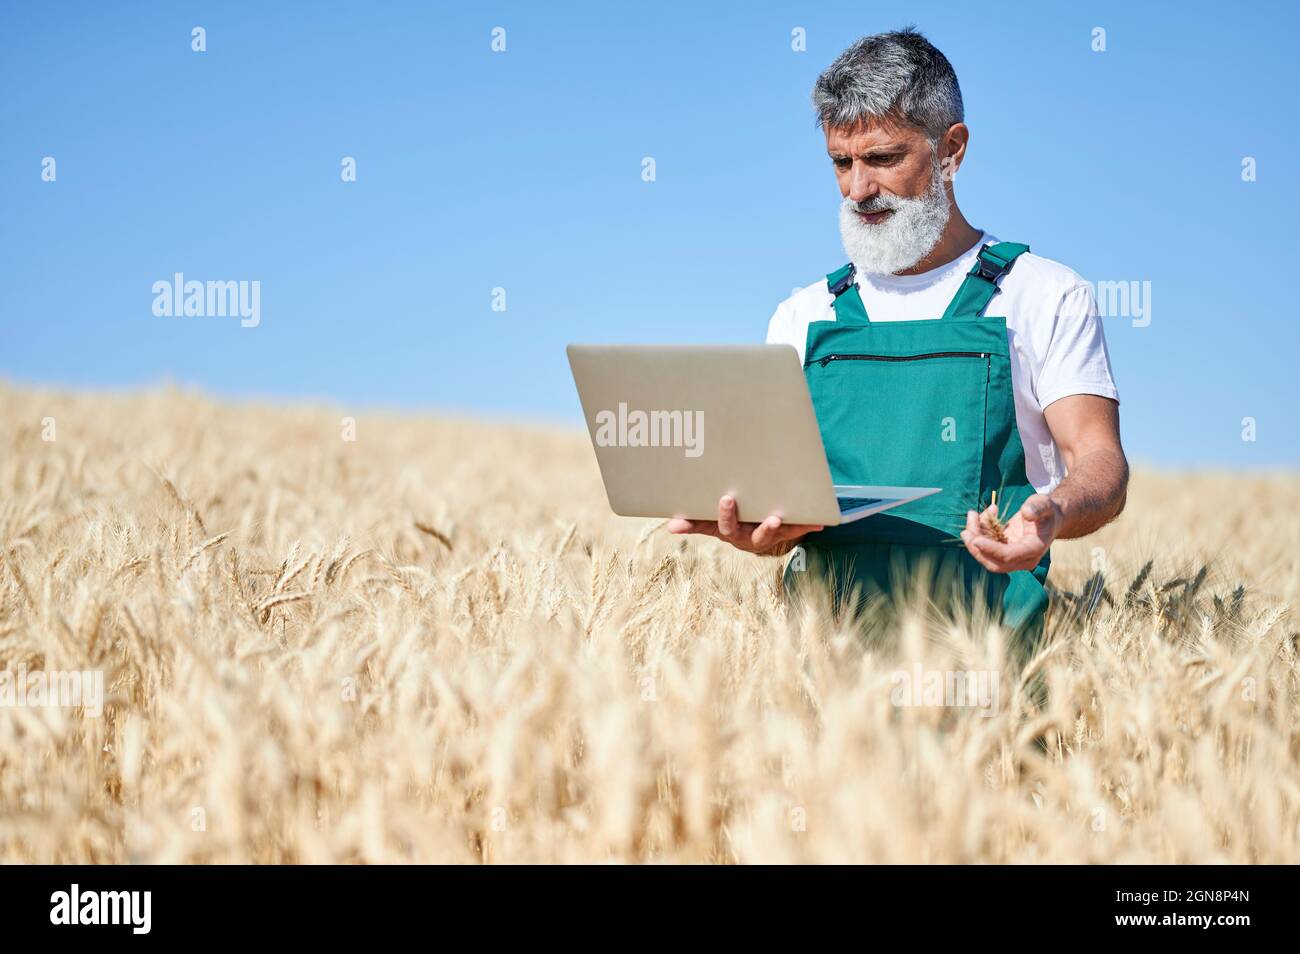 Trabajador agrícola masculino mirando el portátil mientras trabajaba en el campo de trigo durante el día soleado Foto de stock